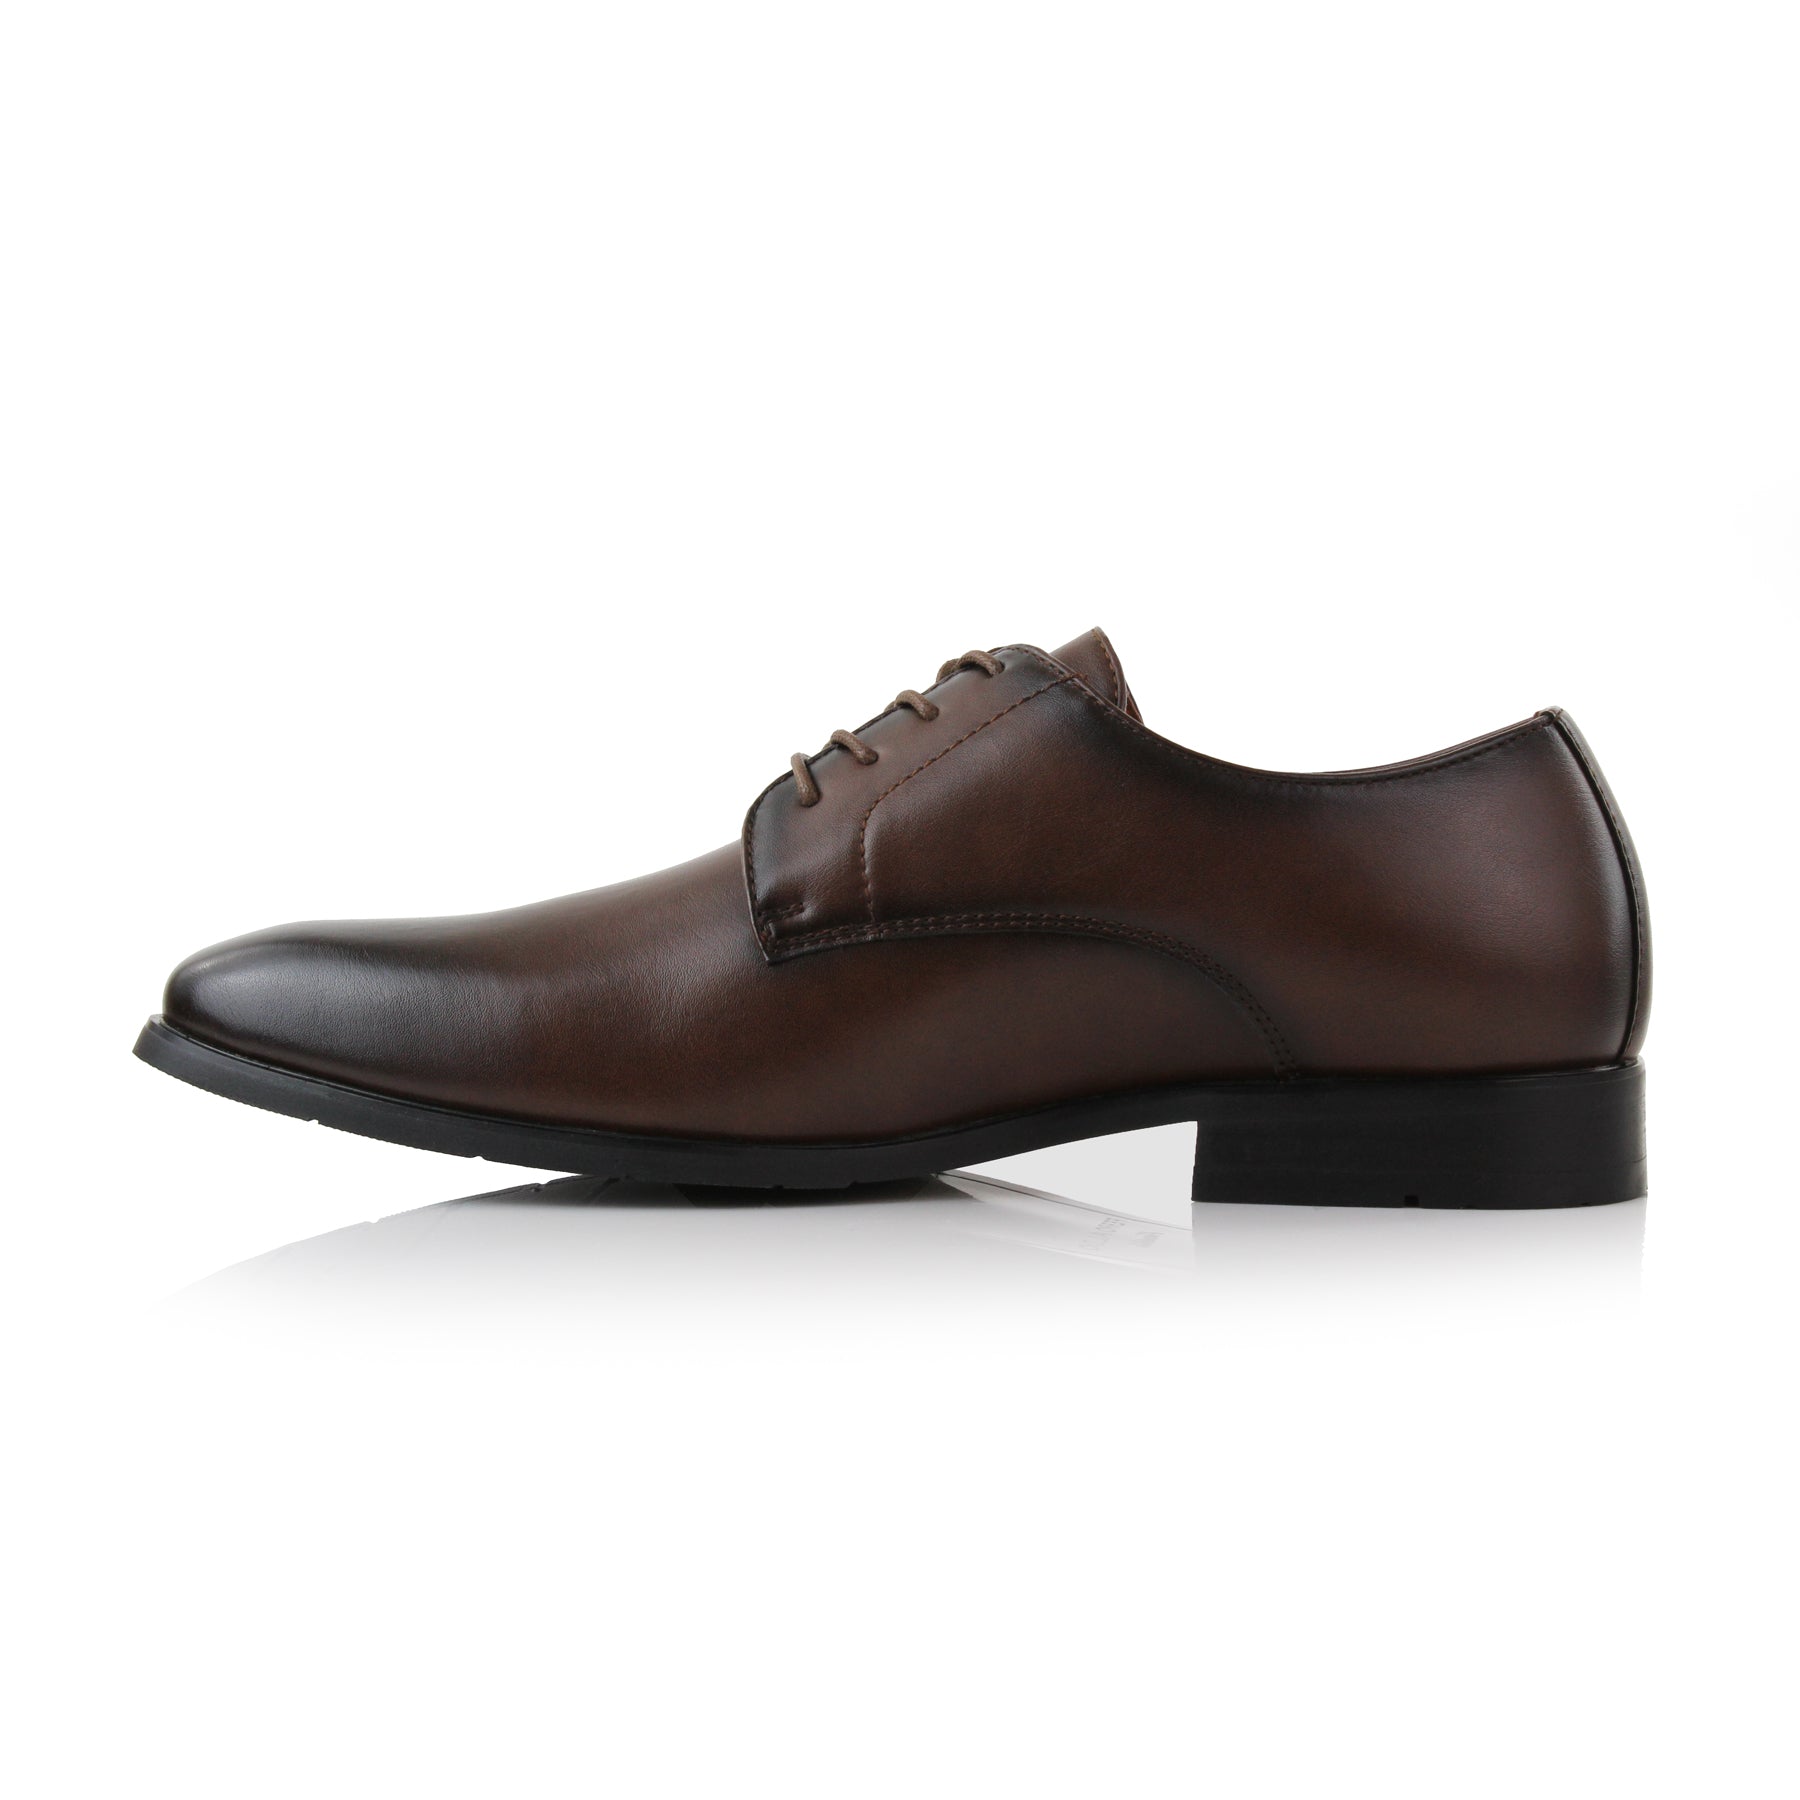 Plain Toe Derby Shoes | Alvin by Ferro Aldo | Conal Footwear | Inner Side Angle View